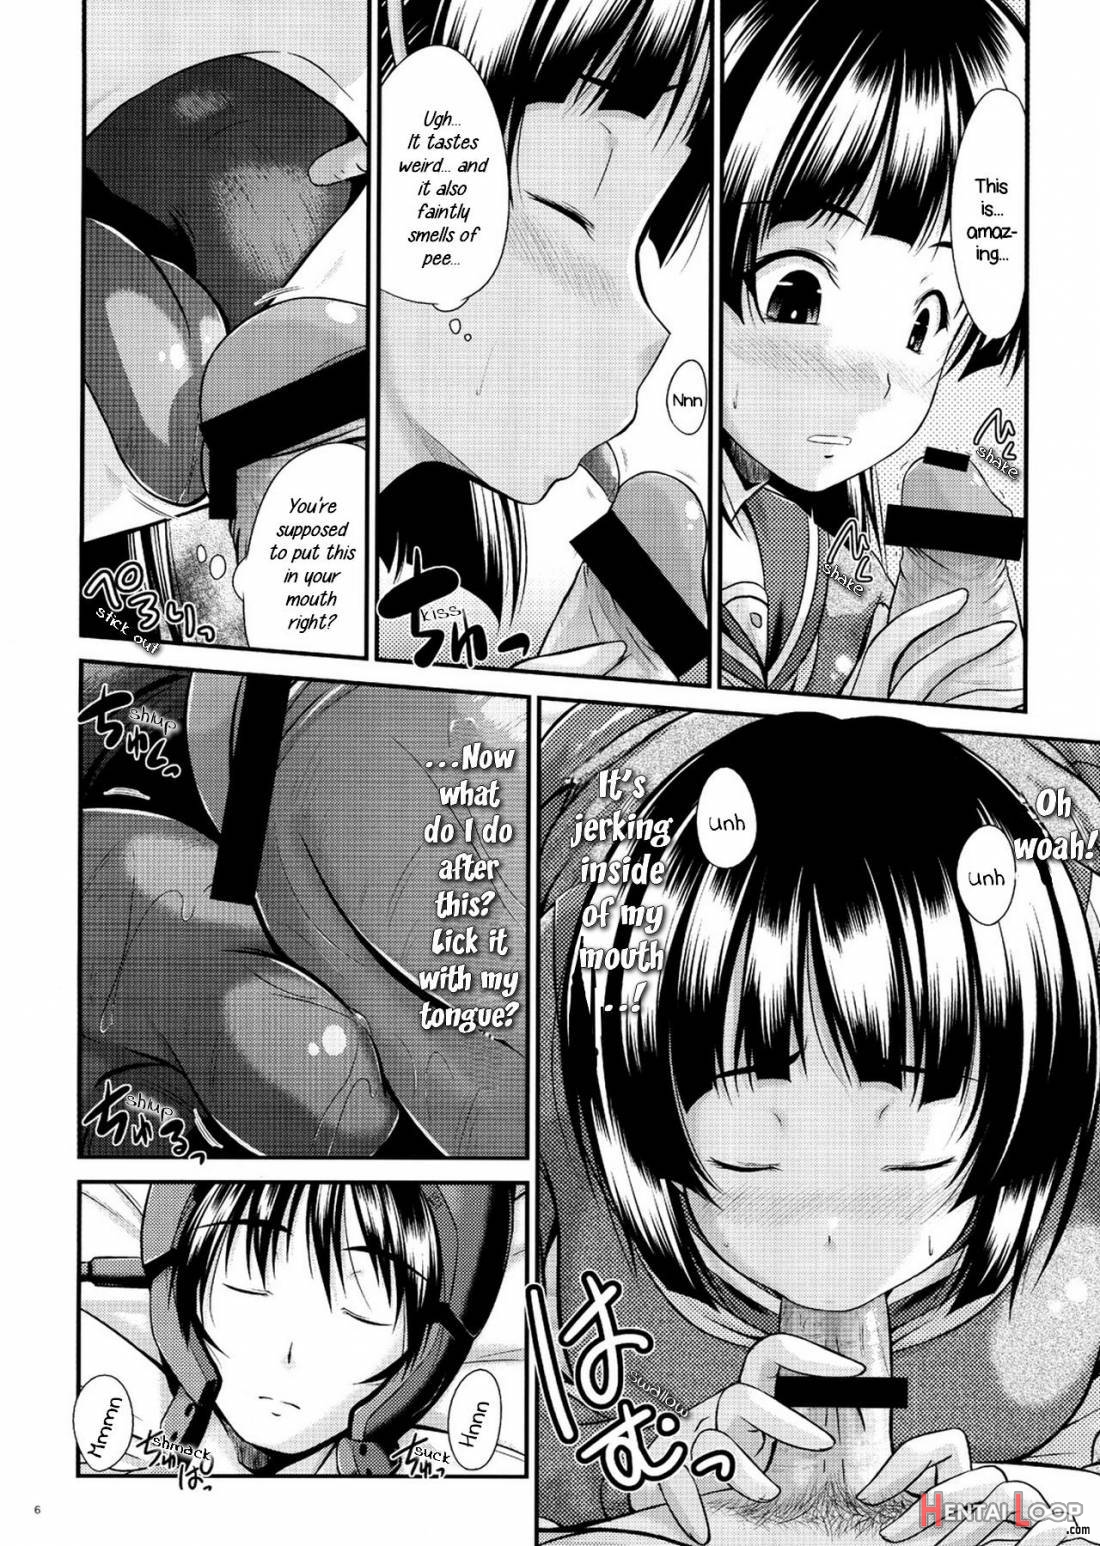 Suguha No Himitsu page 5